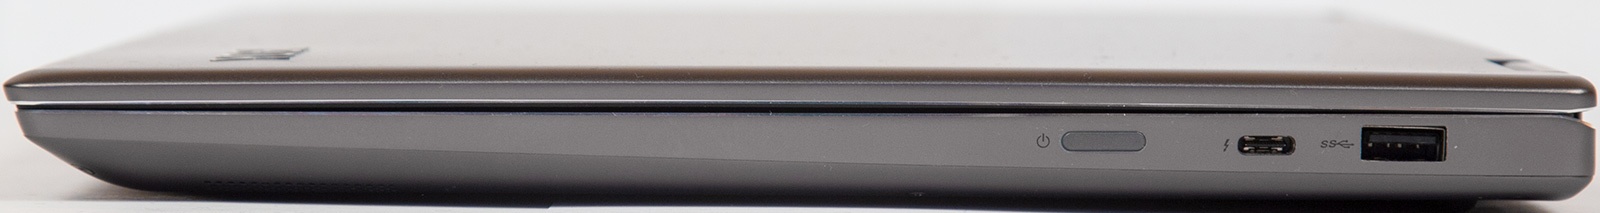 Универсальный Йог. Обзор ноутбука-трансформера Lenovo Yoga 720 - 6